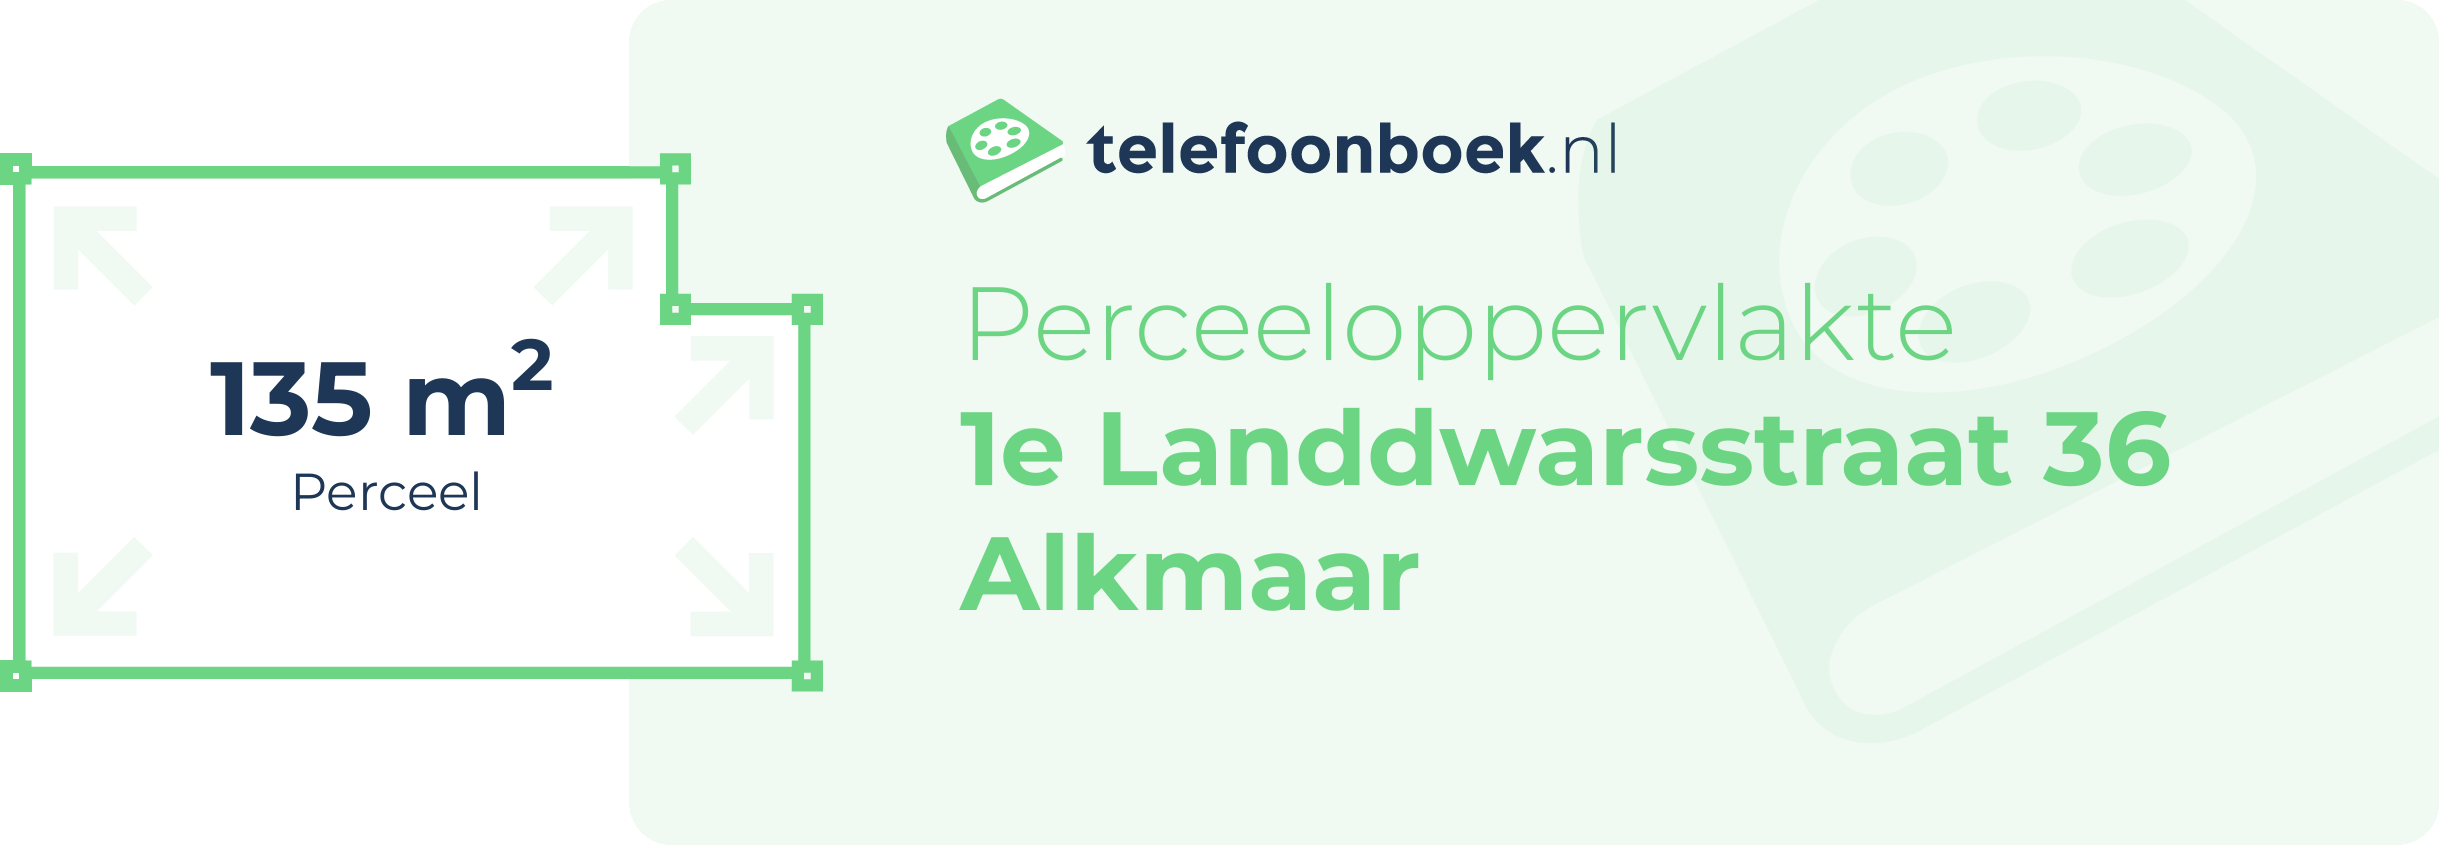 Perceeloppervlakte 1e Landdwarsstraat 36 Alkmaar